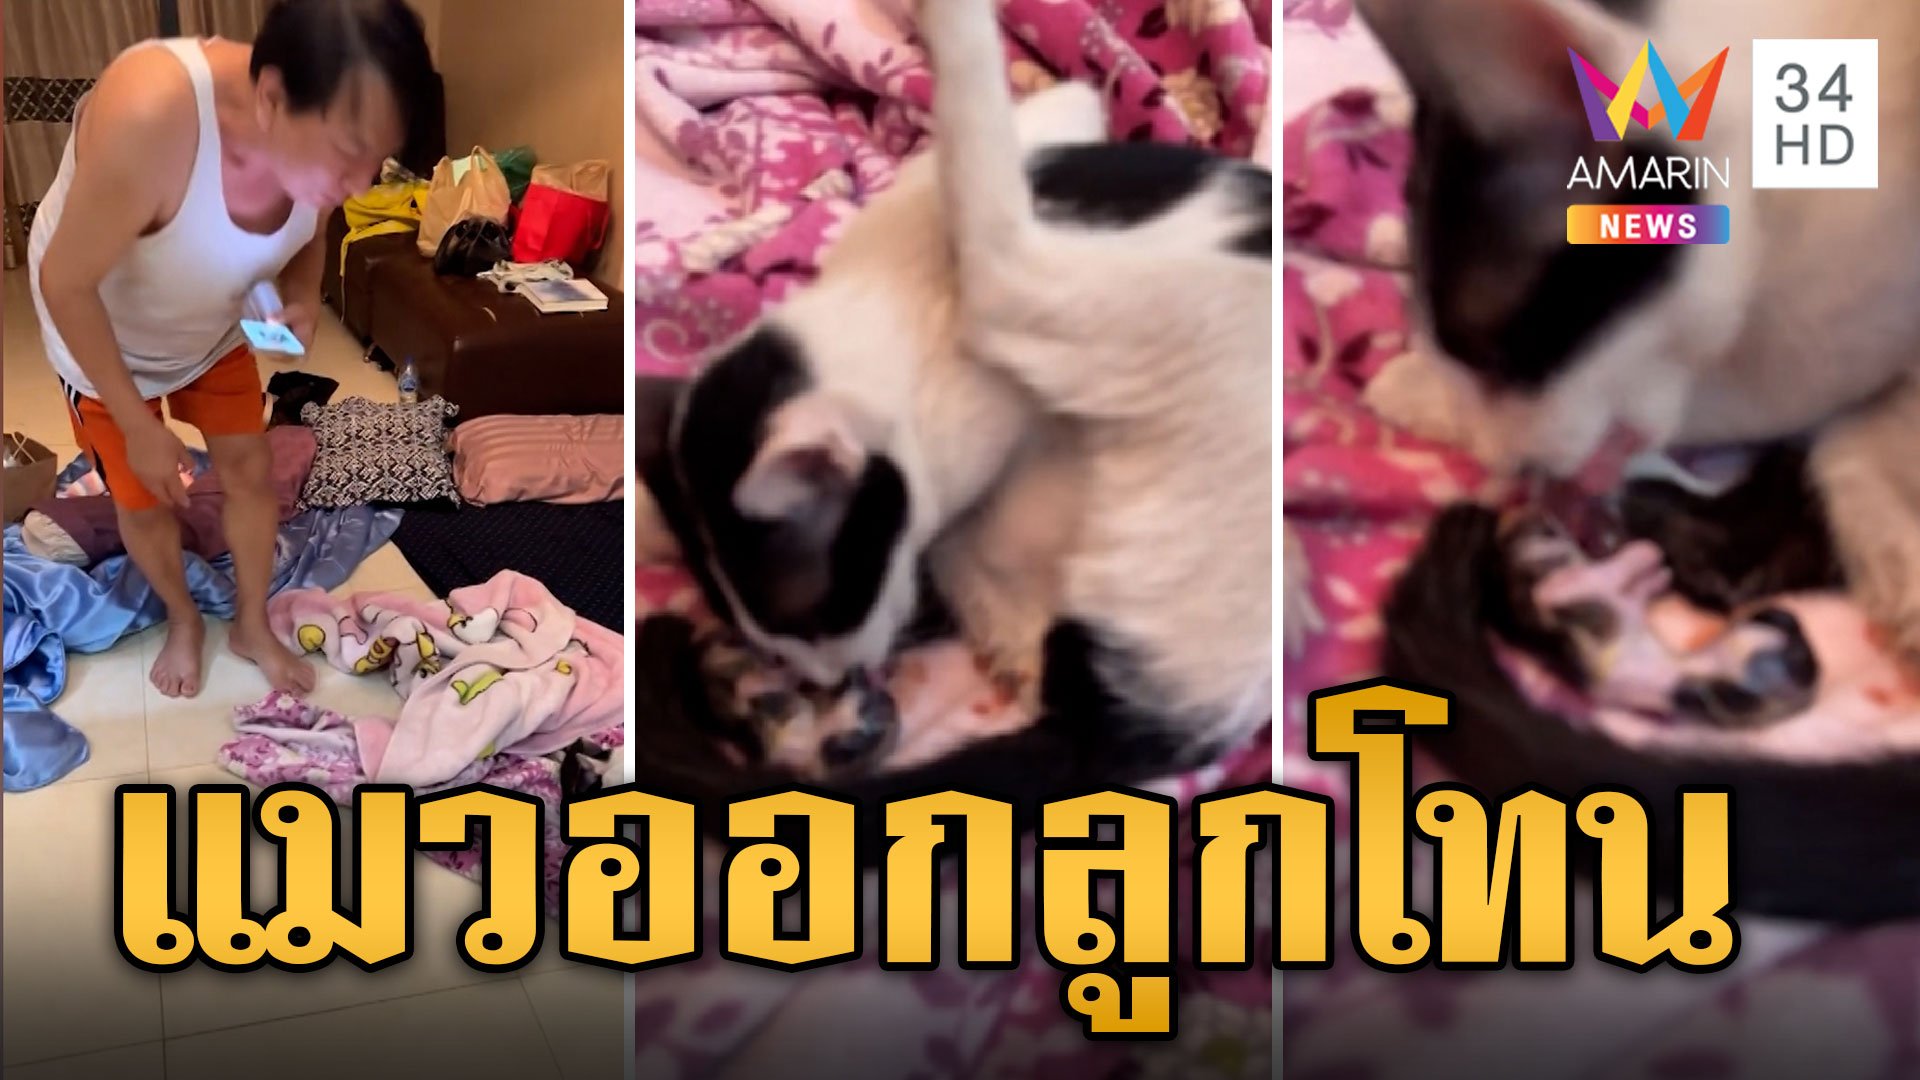 "ธงธง มกจ๊ก" กรี๊ด! แมวออกลูกโทน ทิ้งรกให้โชคลาภ | ข่าวอรุณอมรินทร์ | 2 พ.ค. 67 | AMARIN TVHD34